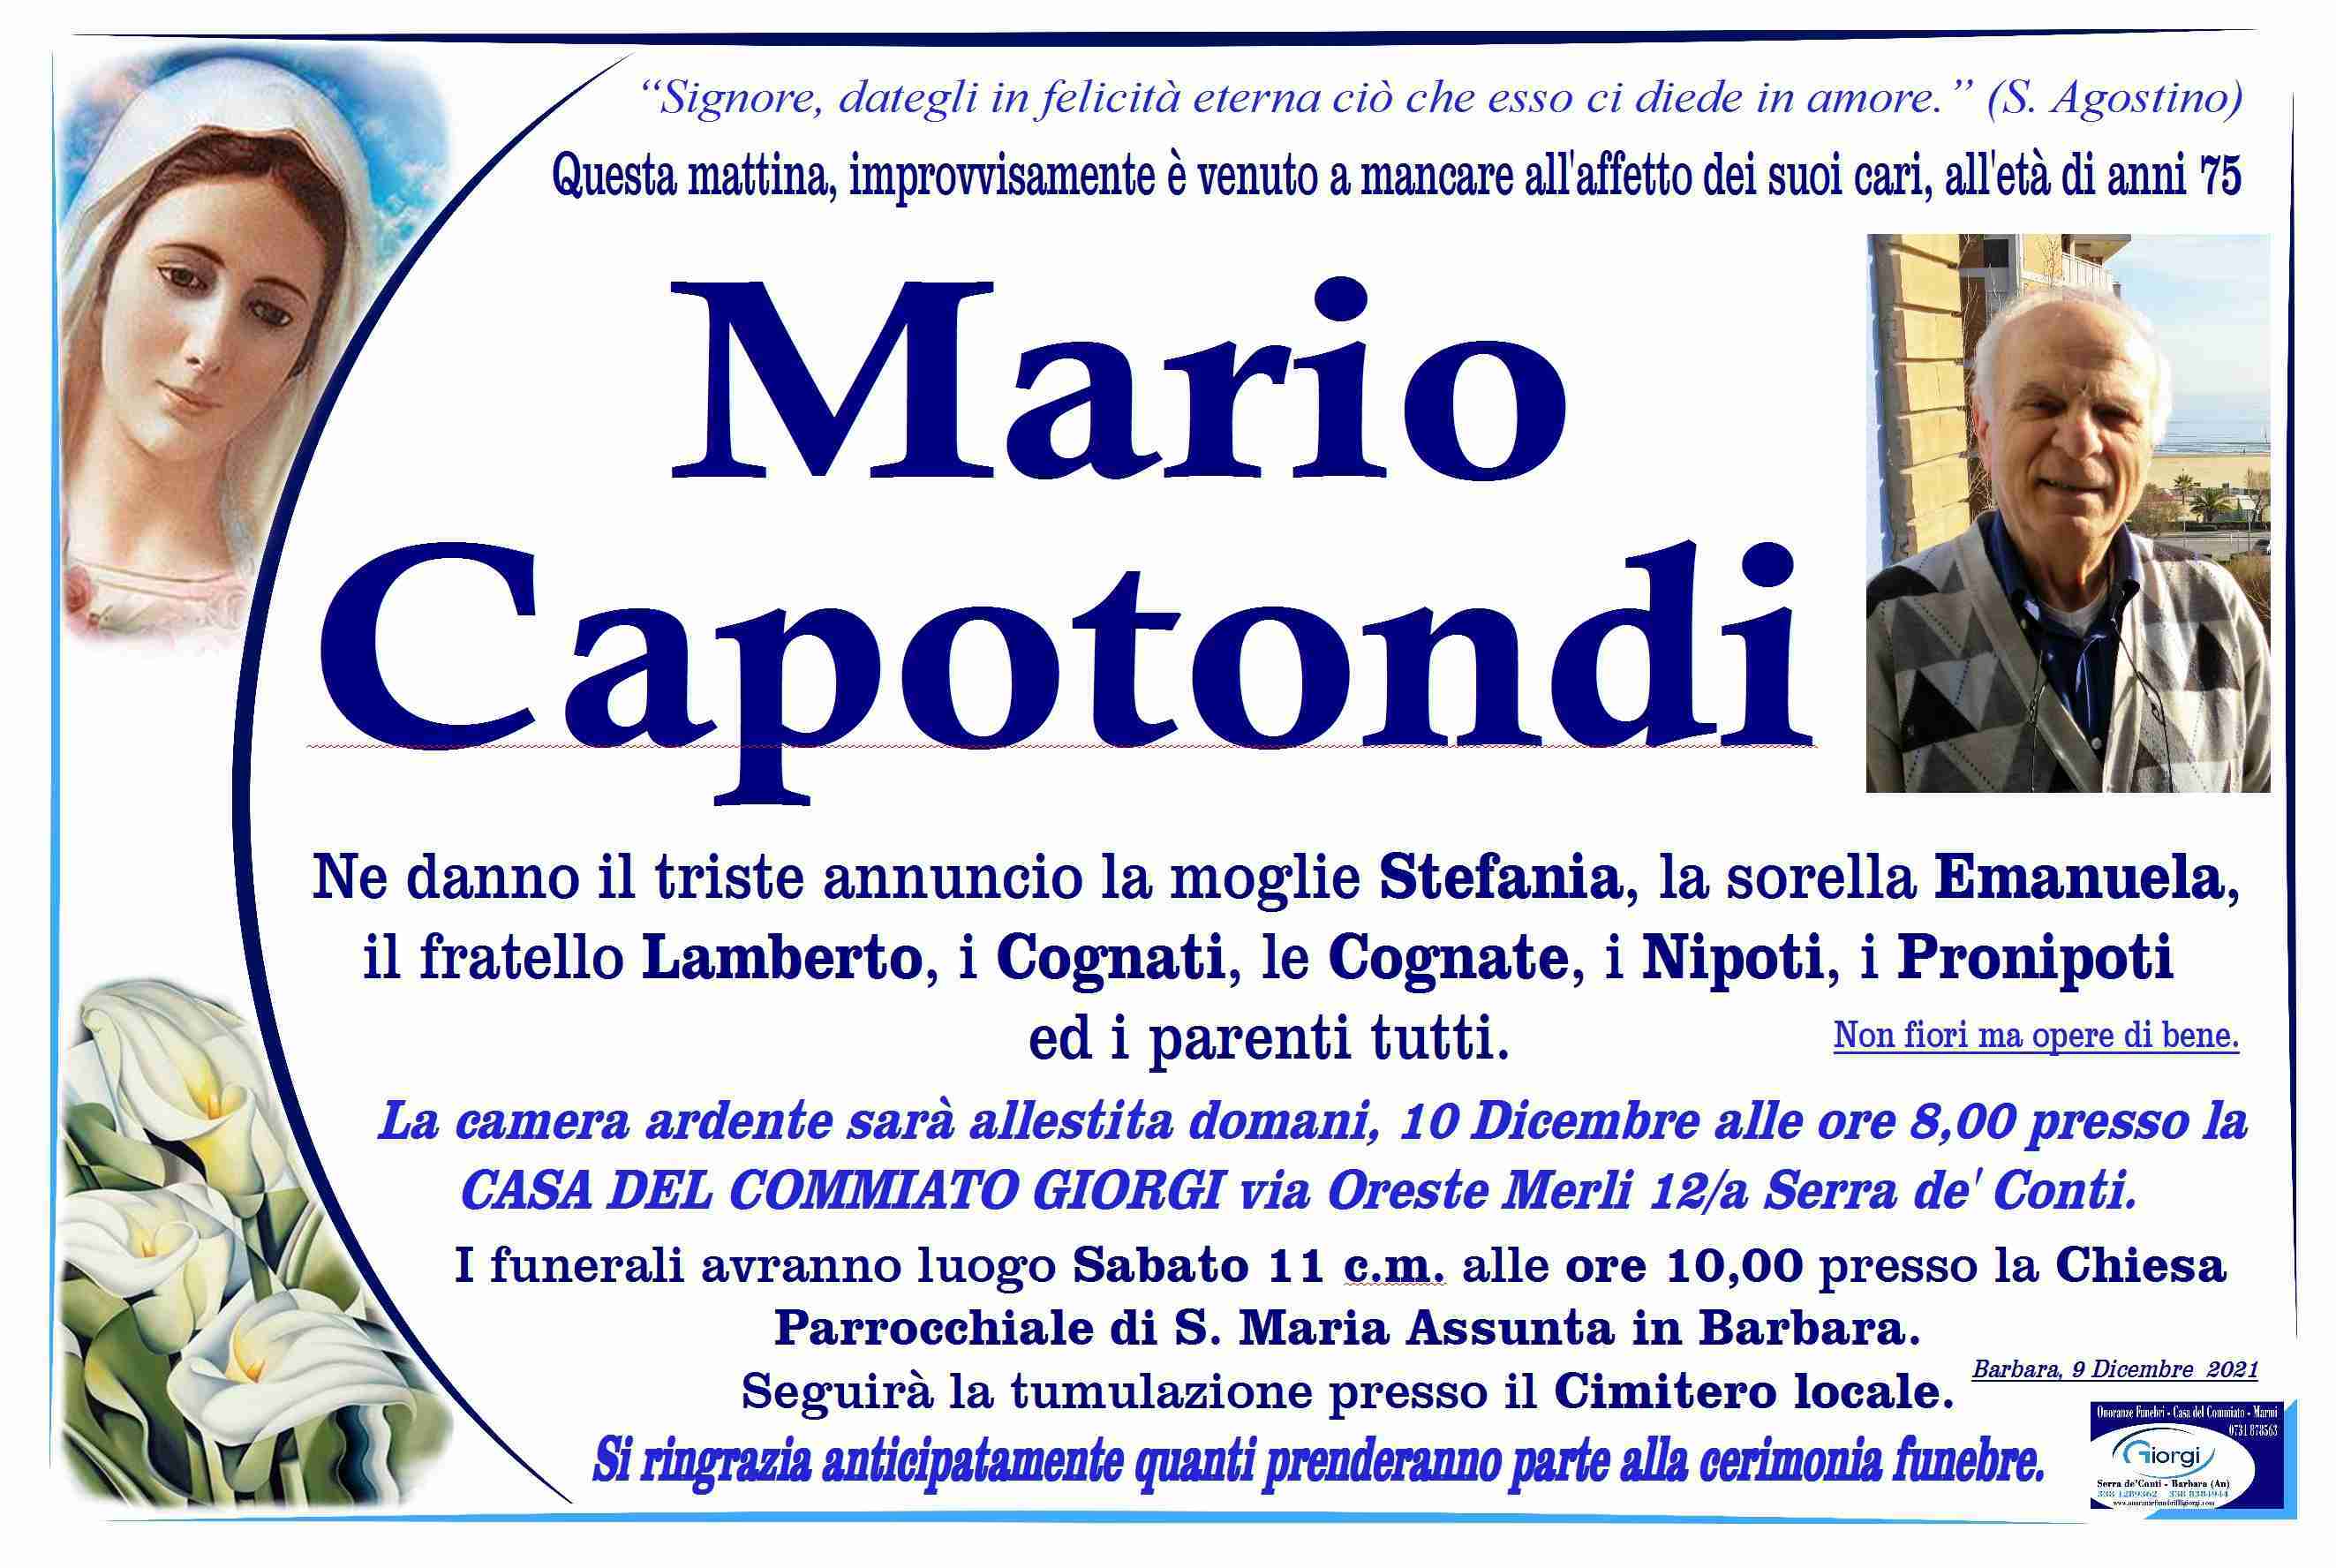 Mario Capotondi